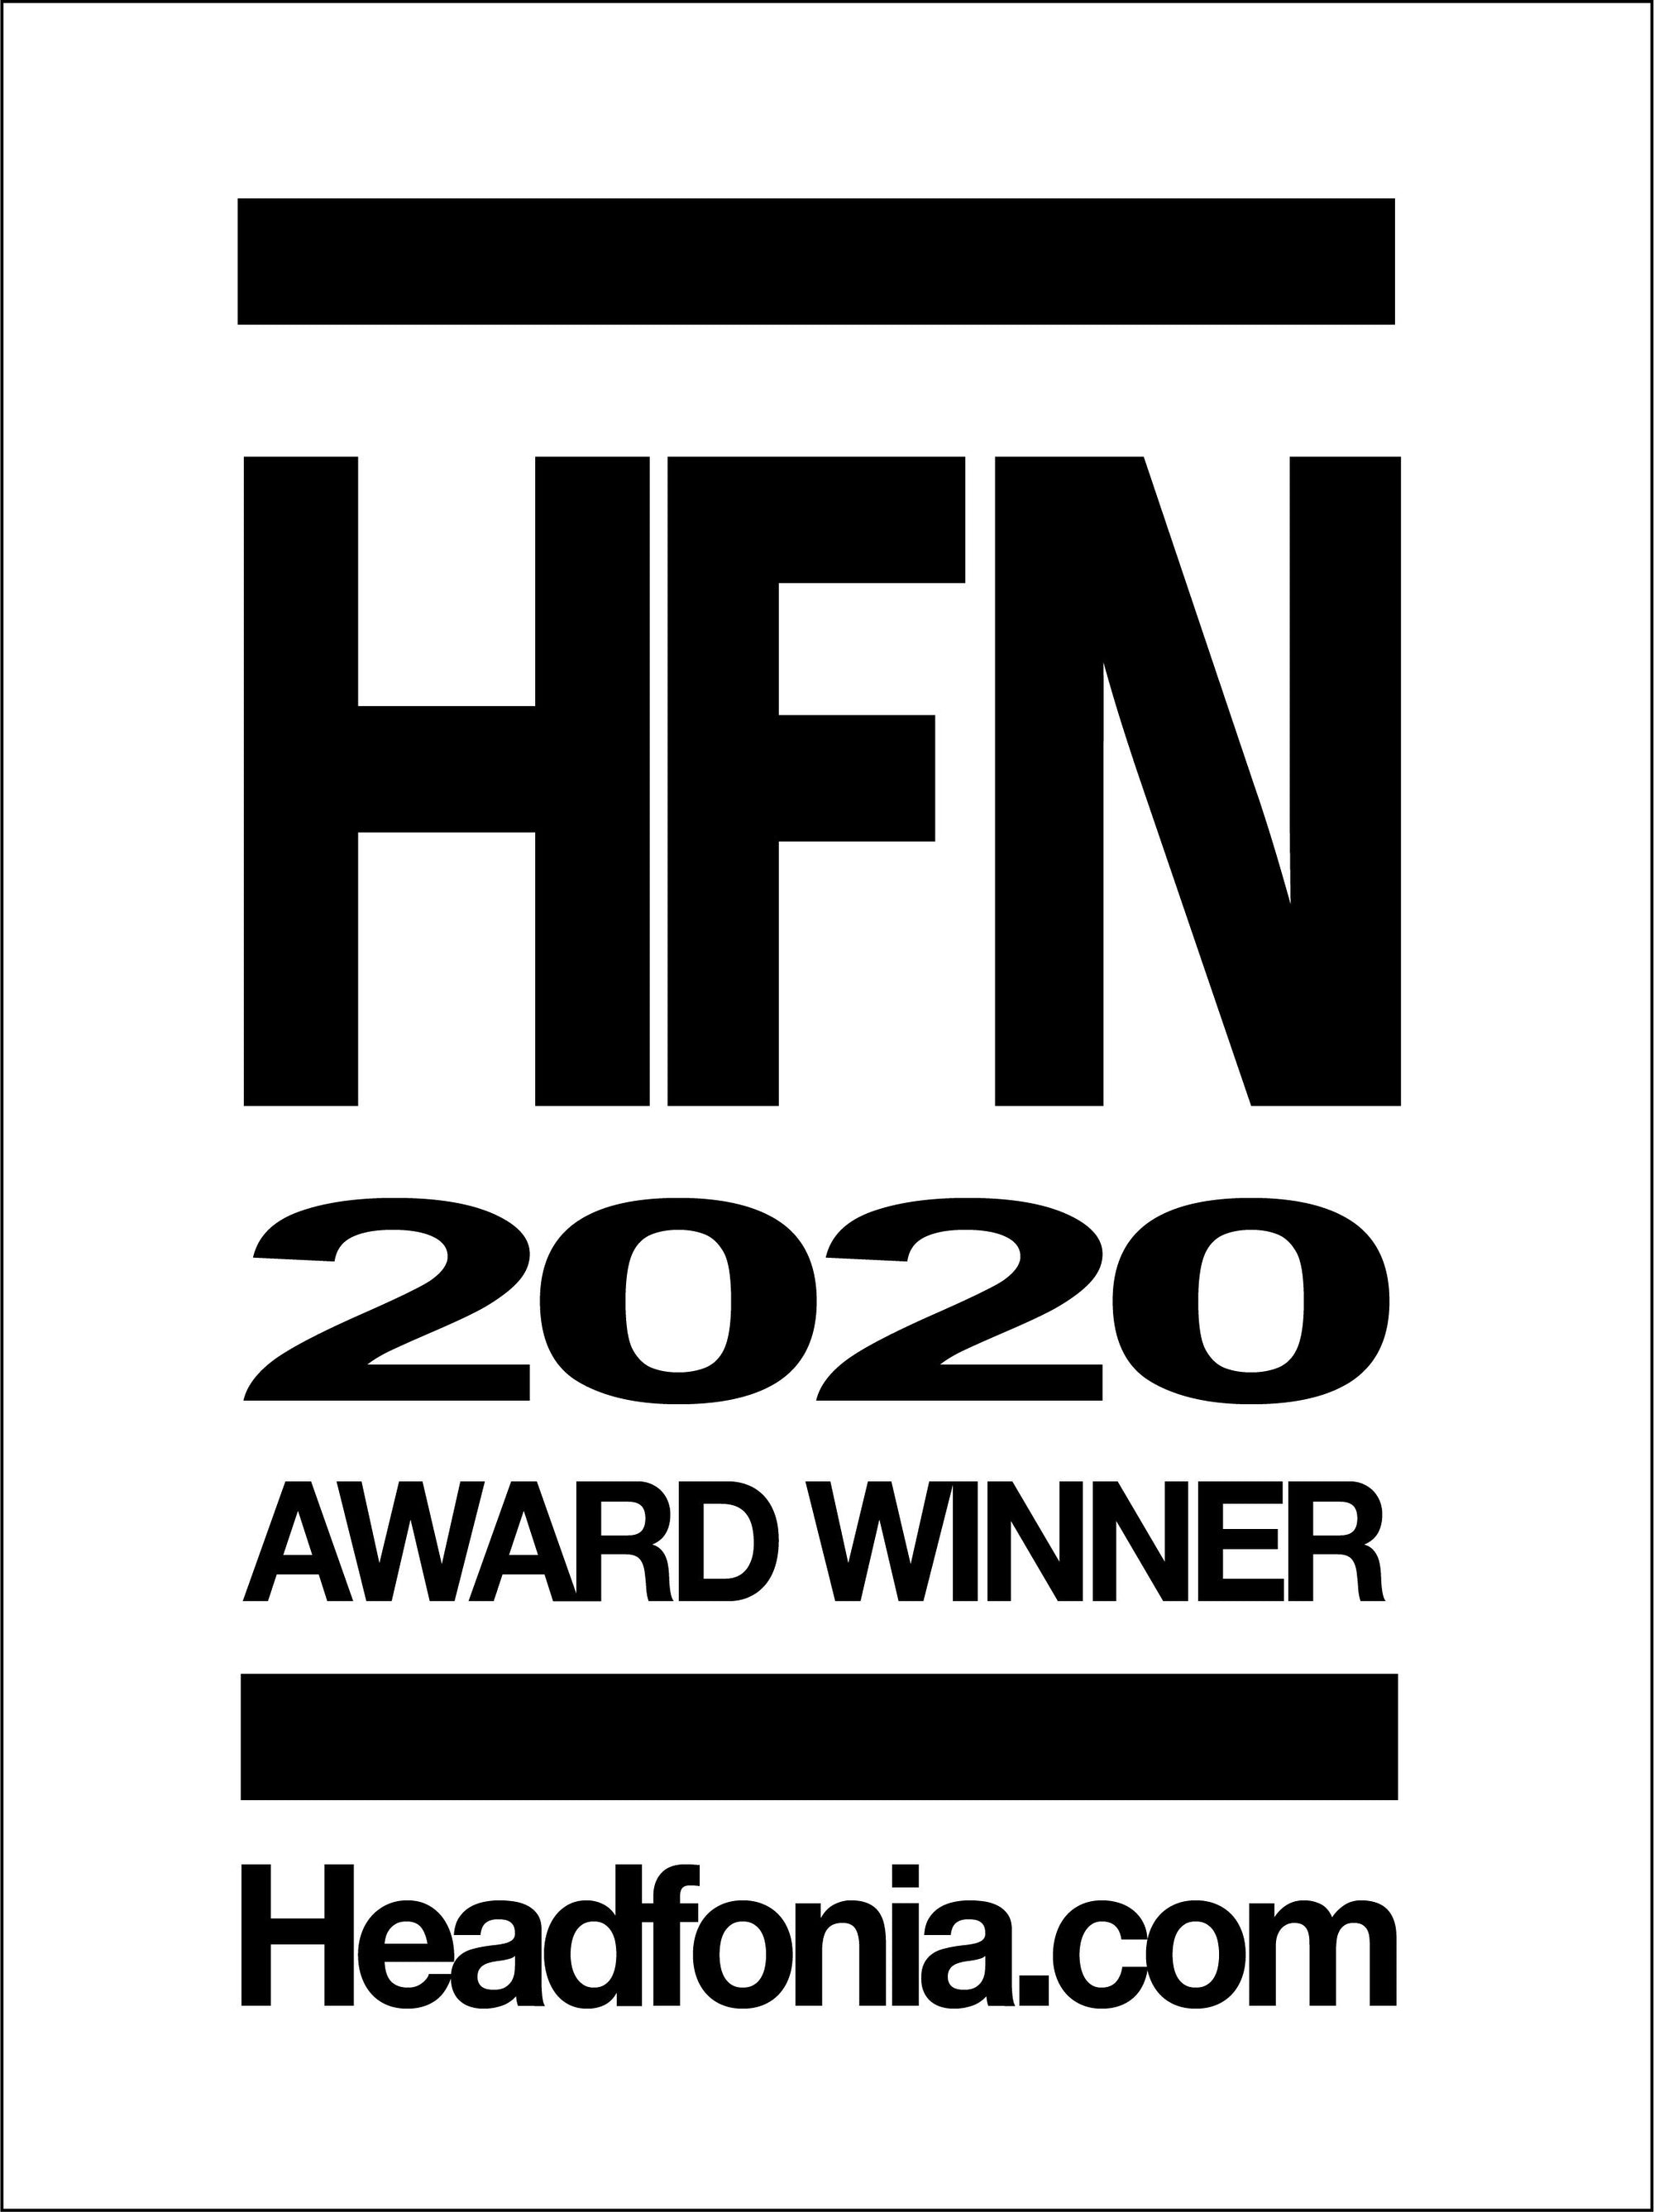 LCD-1 Awarded Headfonia Best of 2020 Award